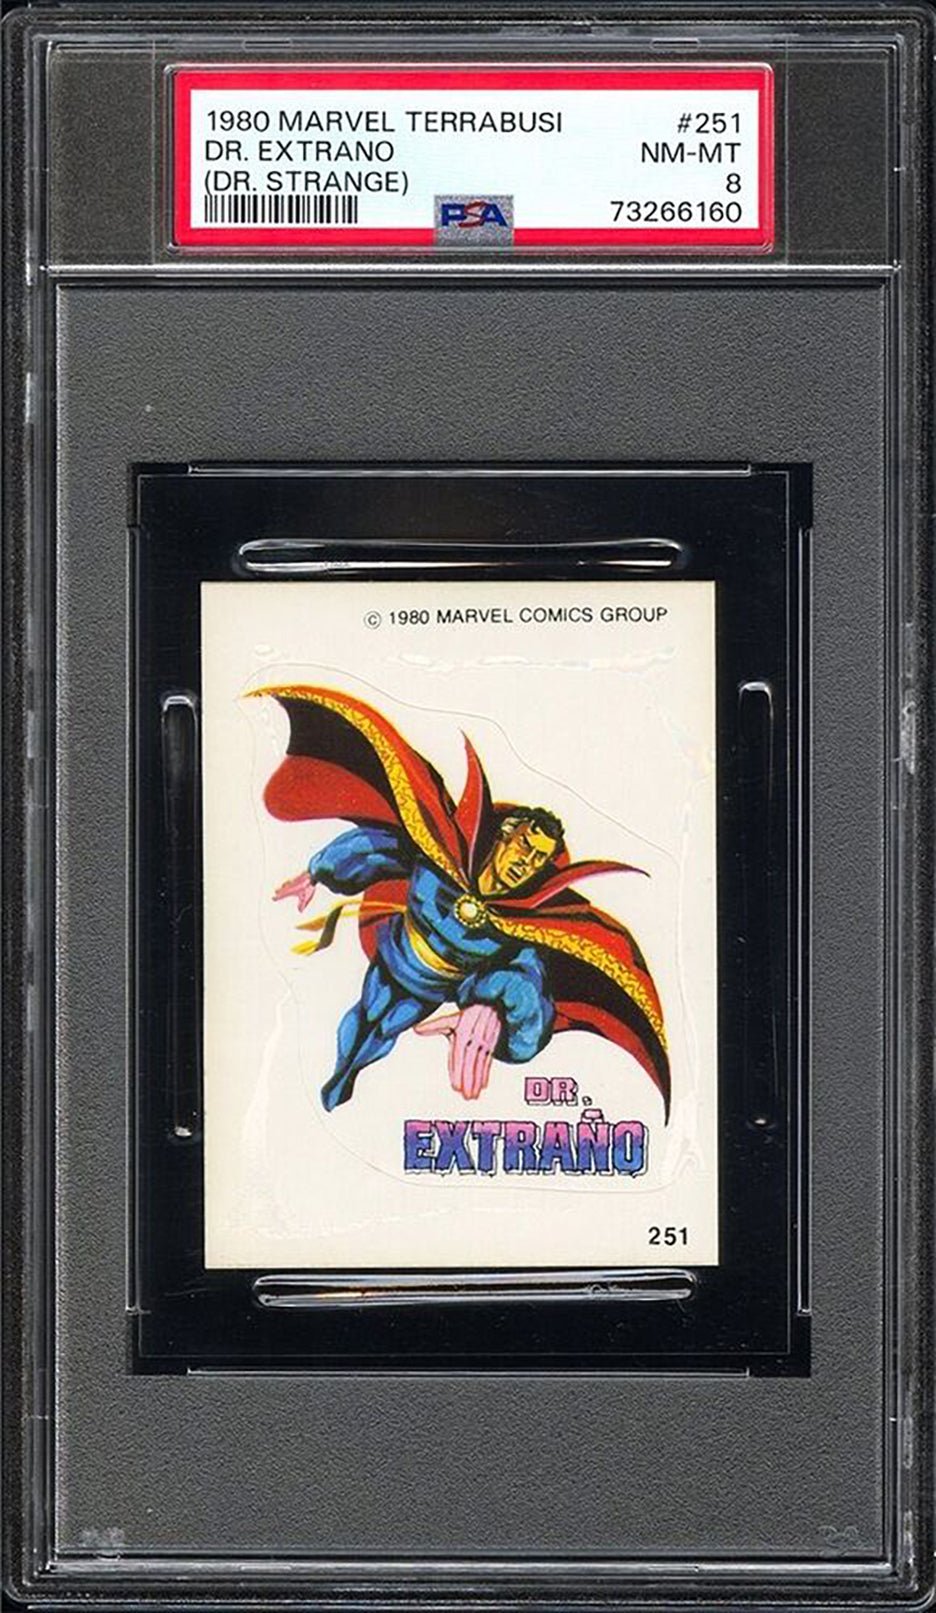 DOCTOR STRANGE PSA 8 1980 Terrabusi Marvel Superheroes Sticker #251 Marvel Graded Cards Sticker - Hobby Gems